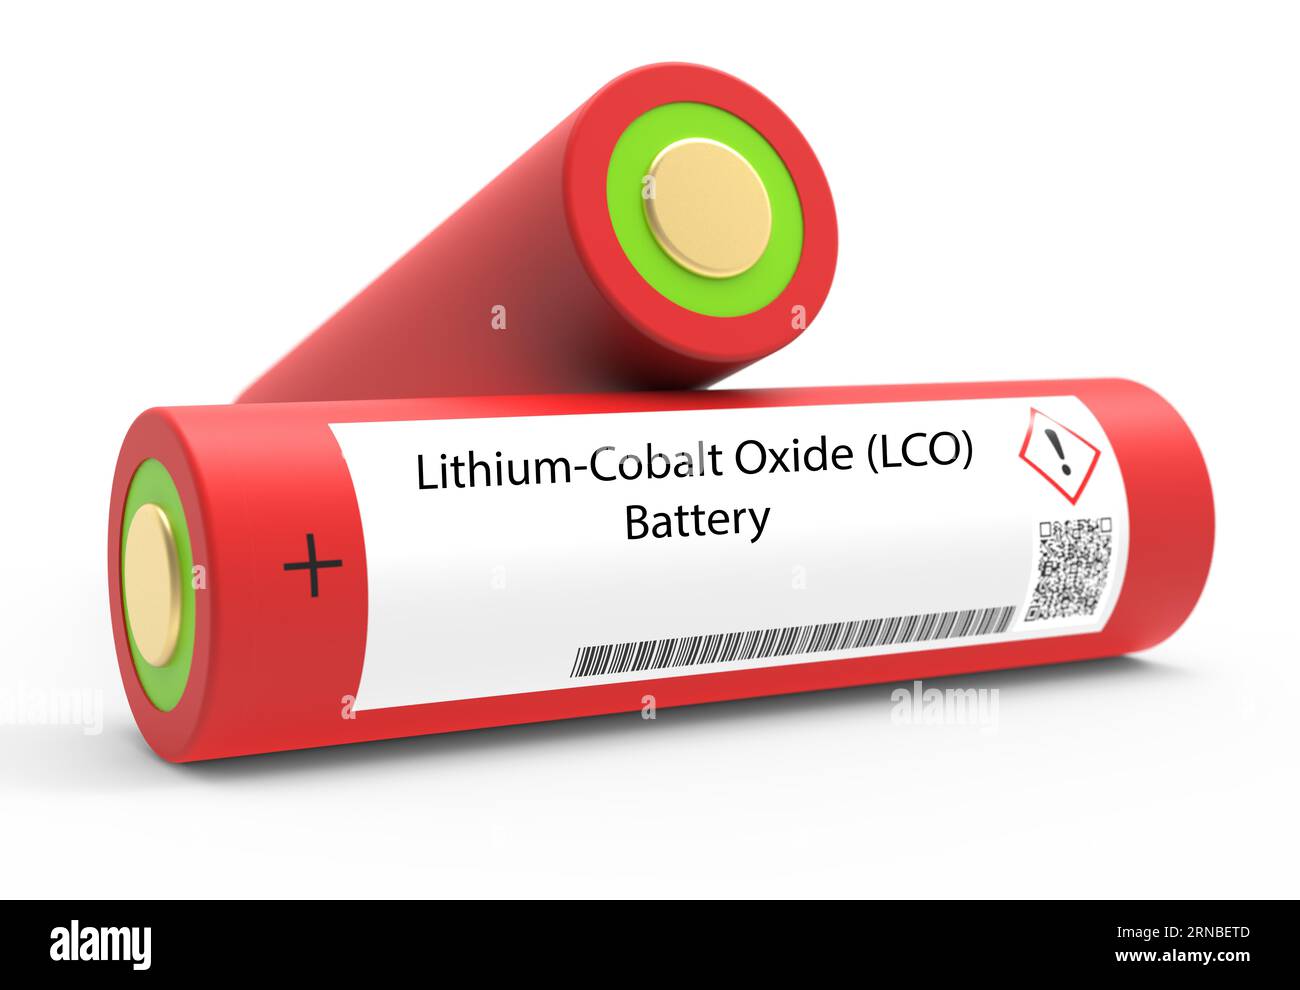 Batteria all'ossido di litio-cobalto (LCO) le batterie LCO sono un tipo di  batteria ricaricabile utilizzata in dispositivi elettronici portatili come  smartphone e computer portatili. Hanno Foto stock - Alamy